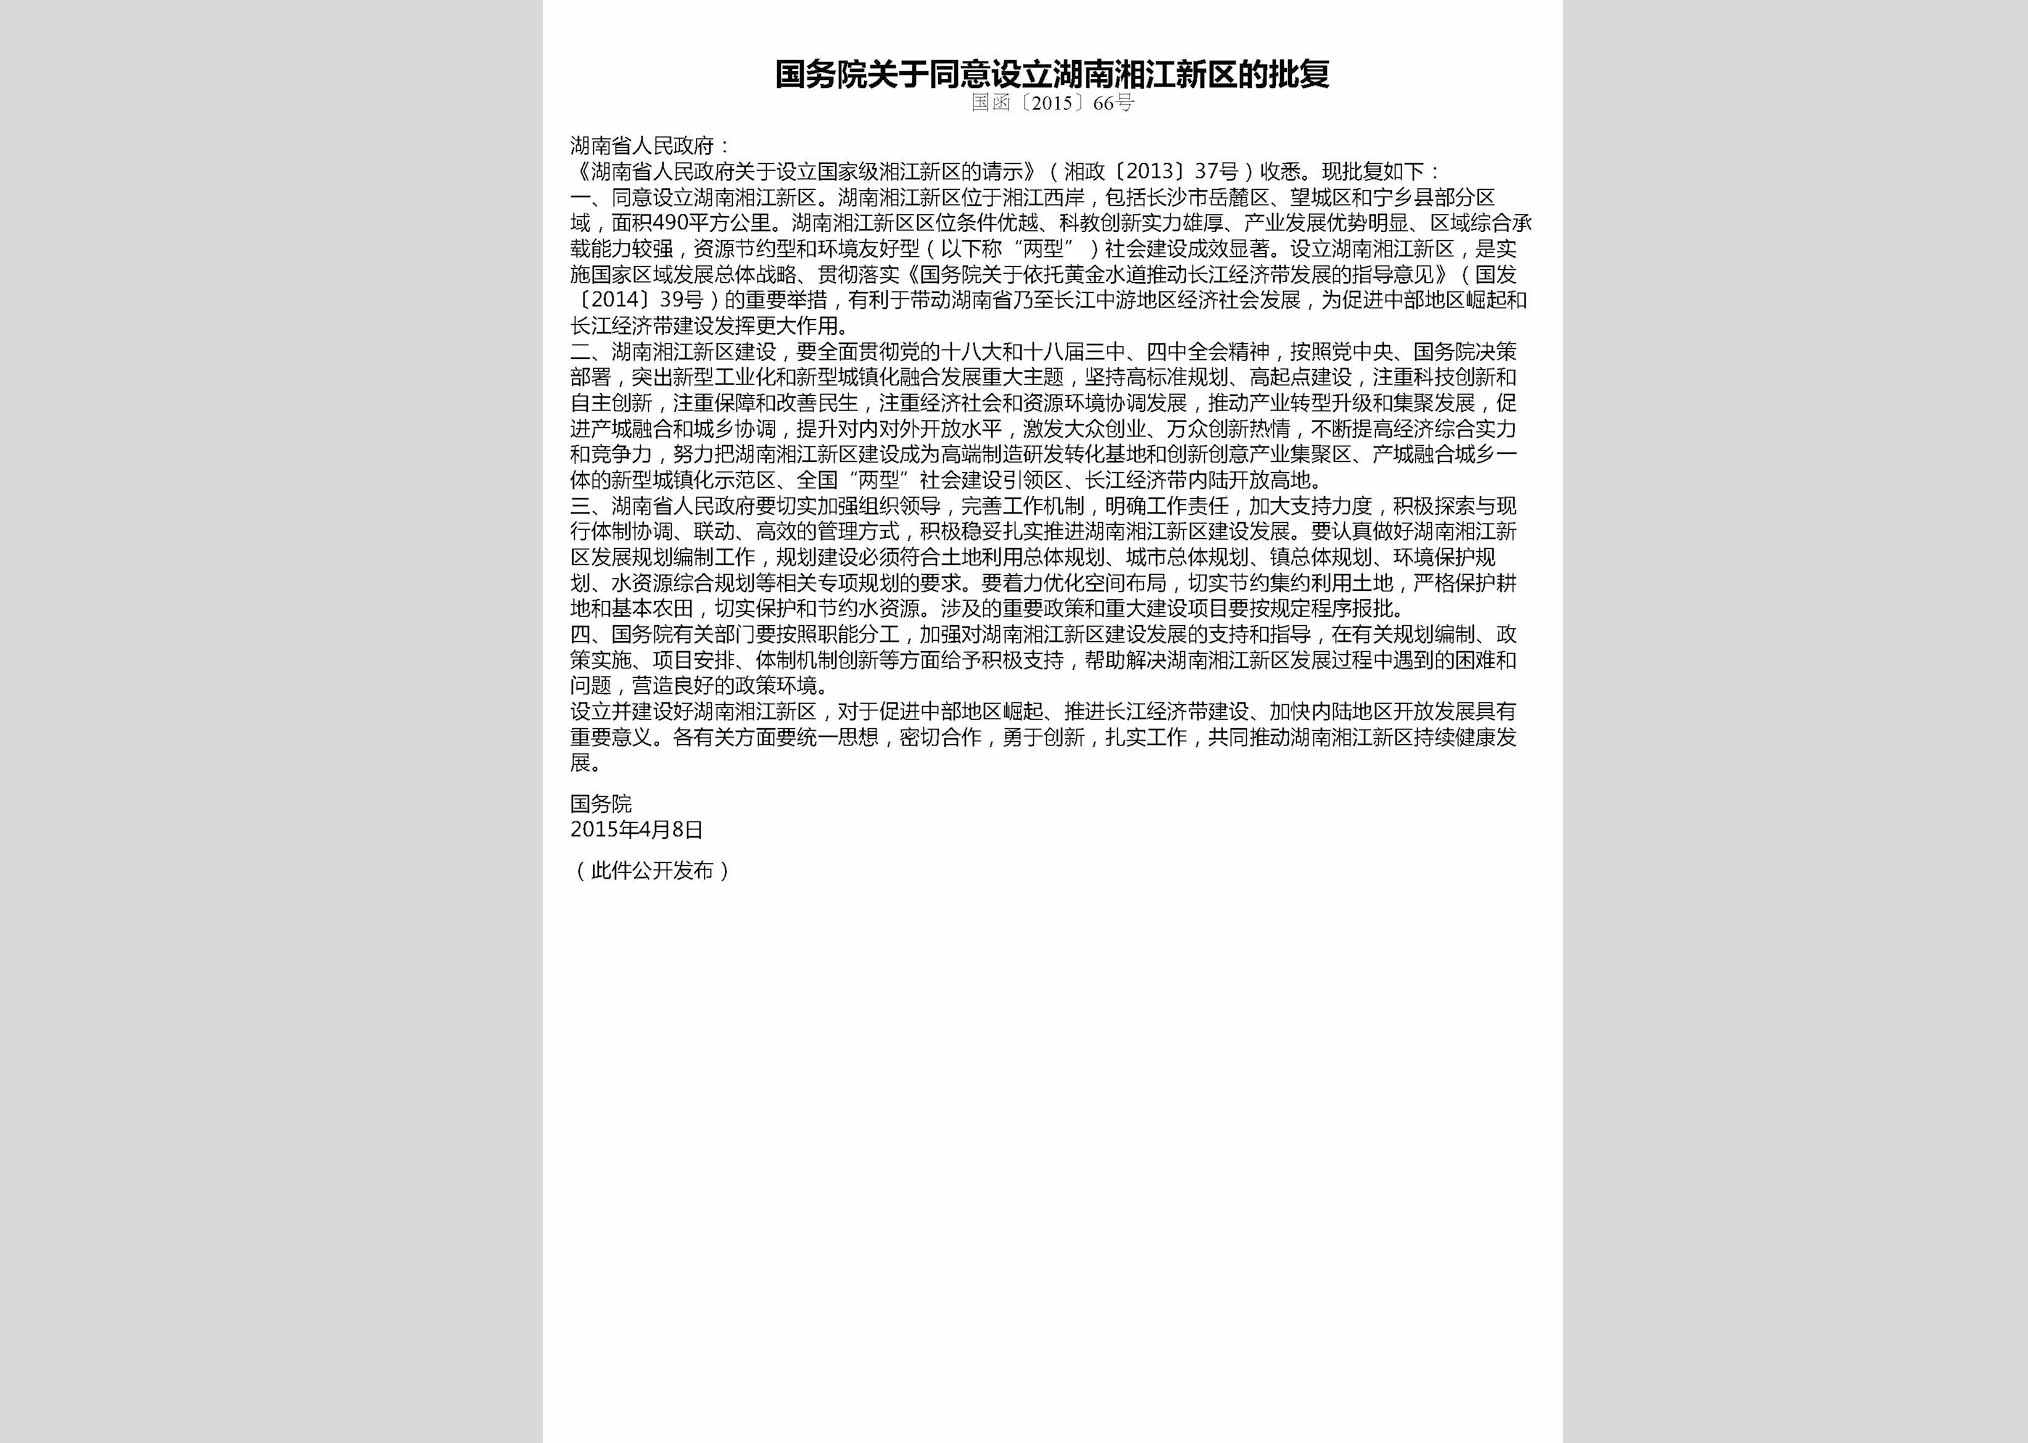 国函[2015]66号：国务院关于同意设立湖南湘江新区的批复